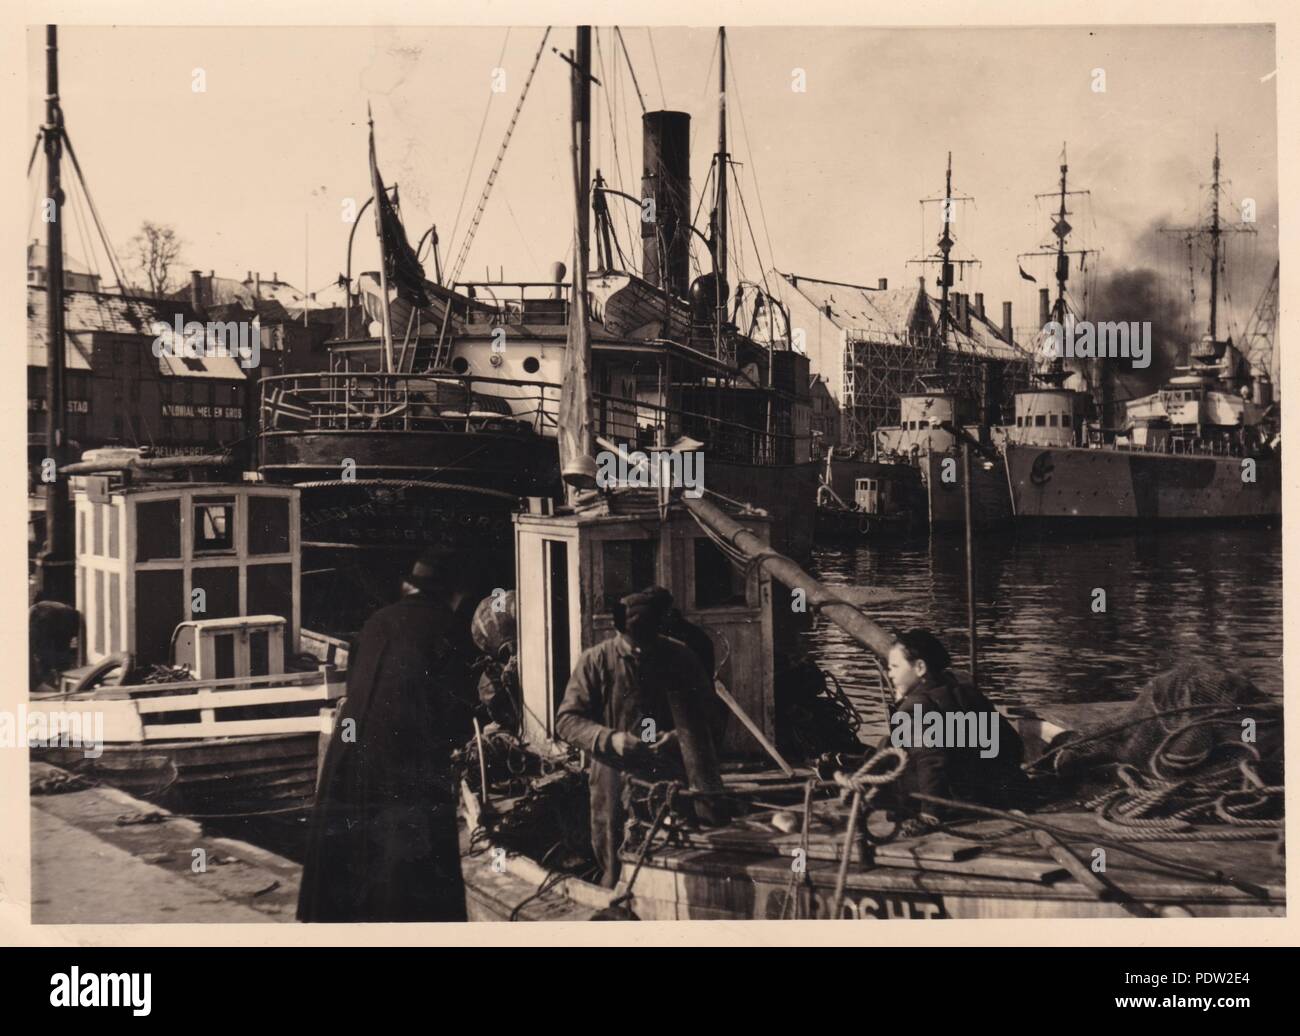 Bild aus dem Fotoalbum von Oberfeldwebel Karl gendner von 1. Staffel, Kampfgeschwader 40: Der Hafen von Stavanger, wie es war am 3. April 1941, unter deutscher Besatzung. Stockfoto